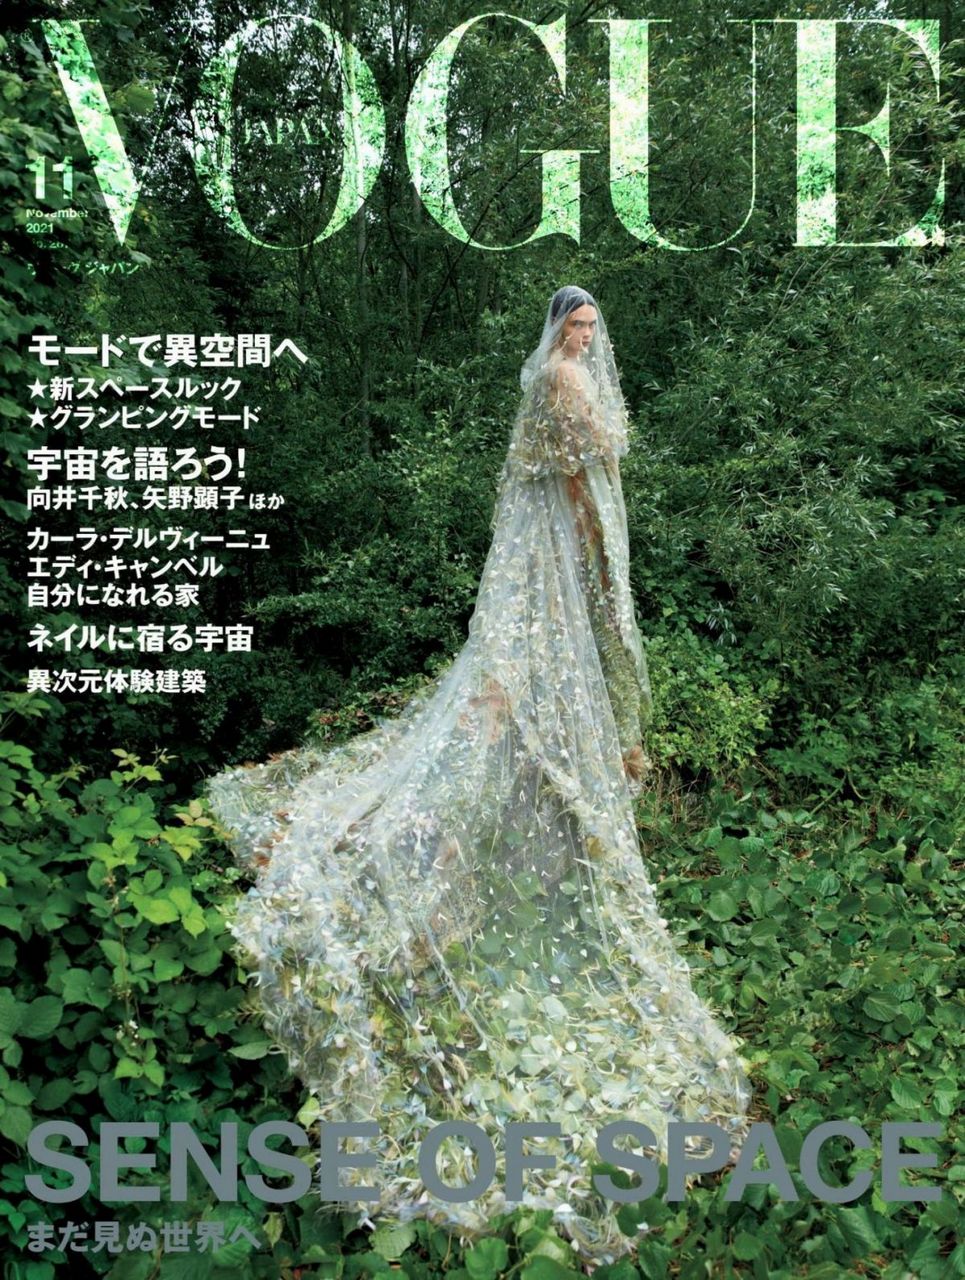 Cara Delevingne Vogue Magazine Japan November